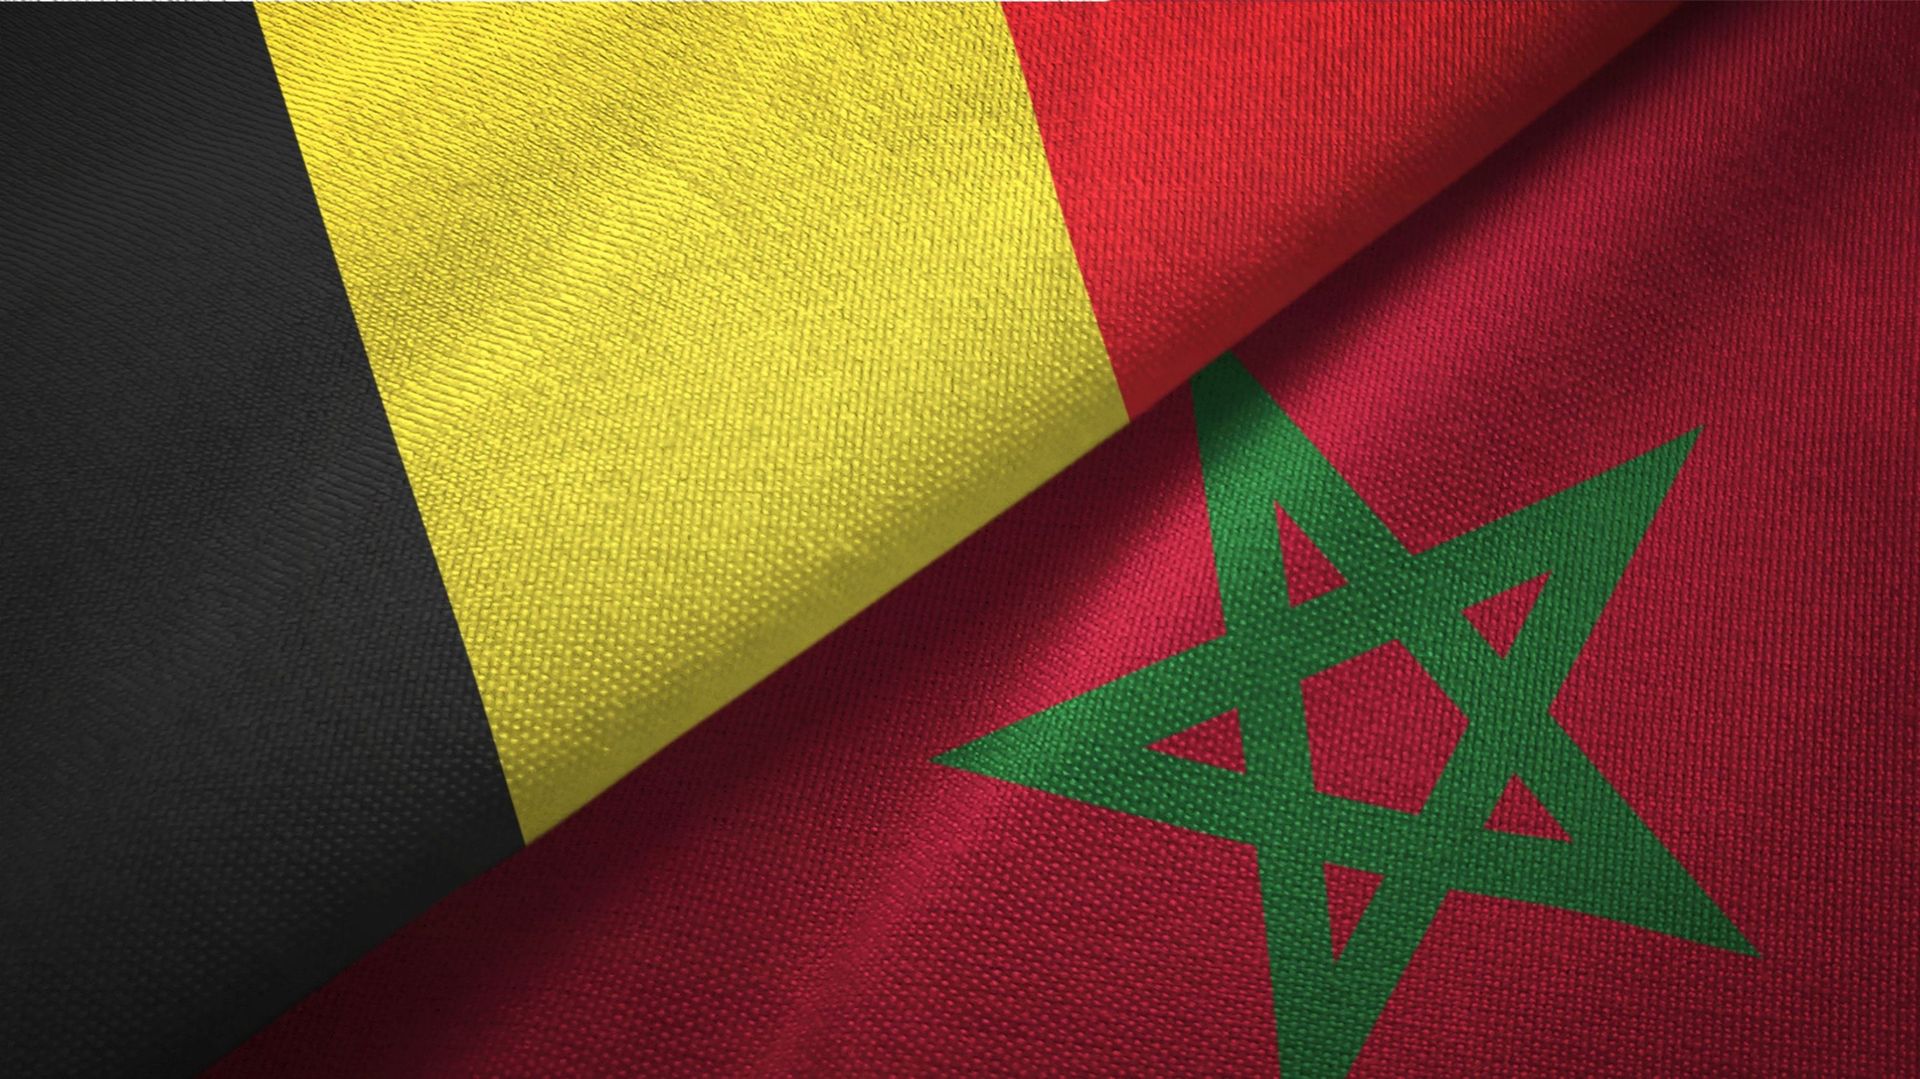 Nationalité : les nouveaux Belges sont majoritairement Marocains. Photo d’illustration.